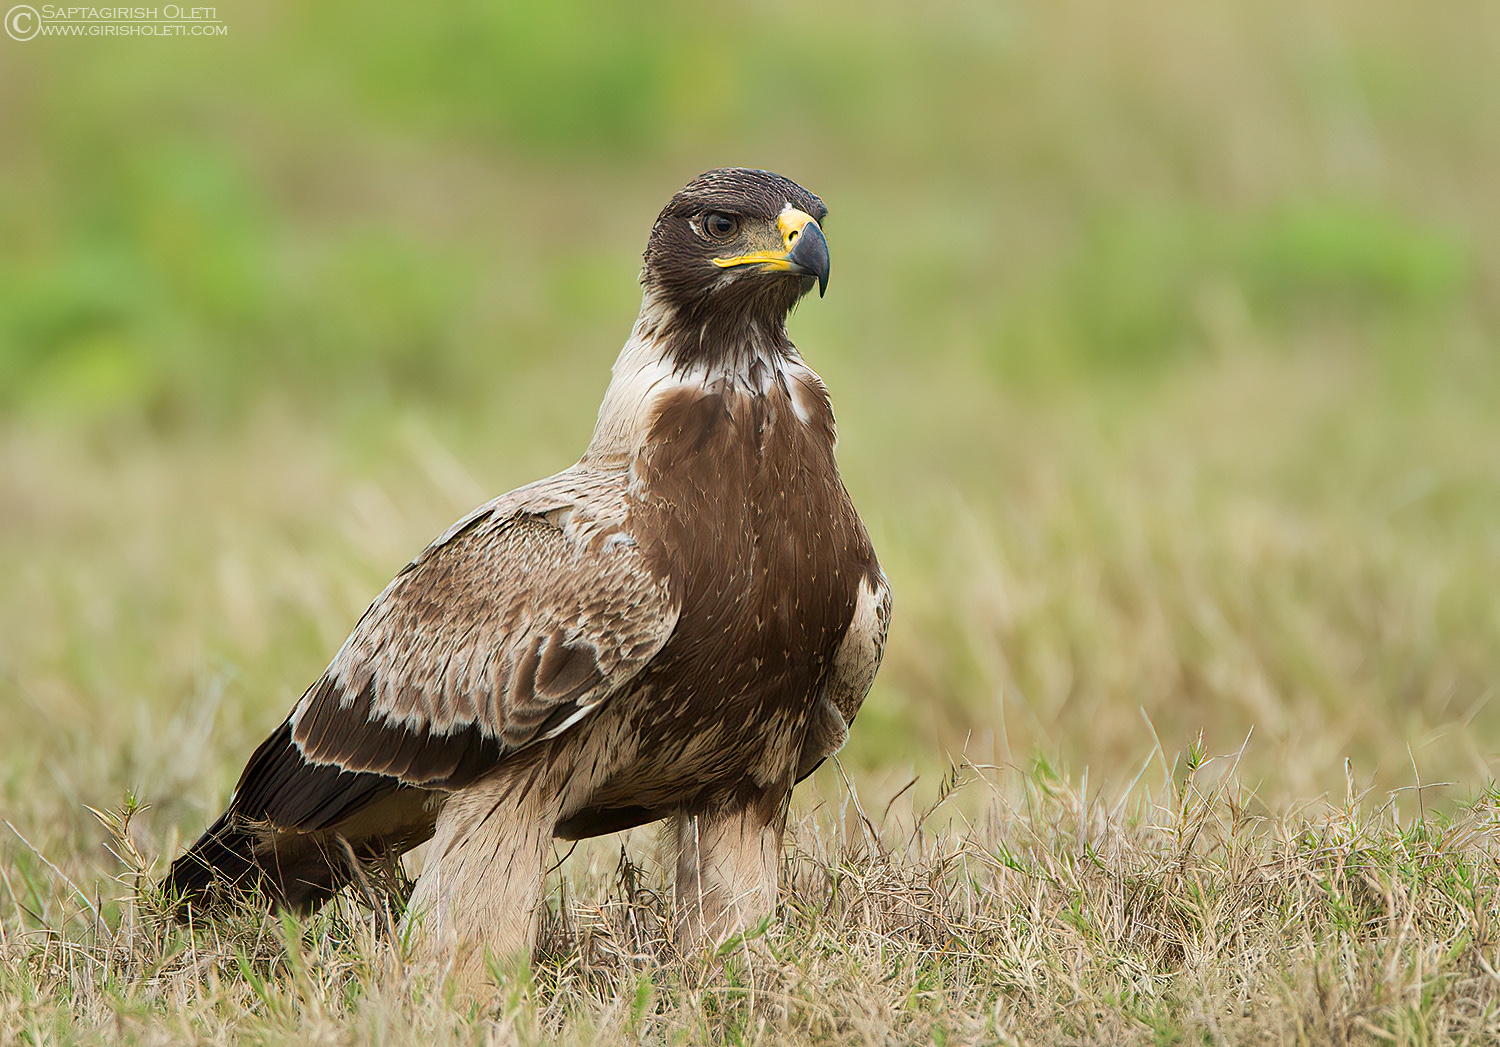 Tawny Eagle photographed at Bangalore, India